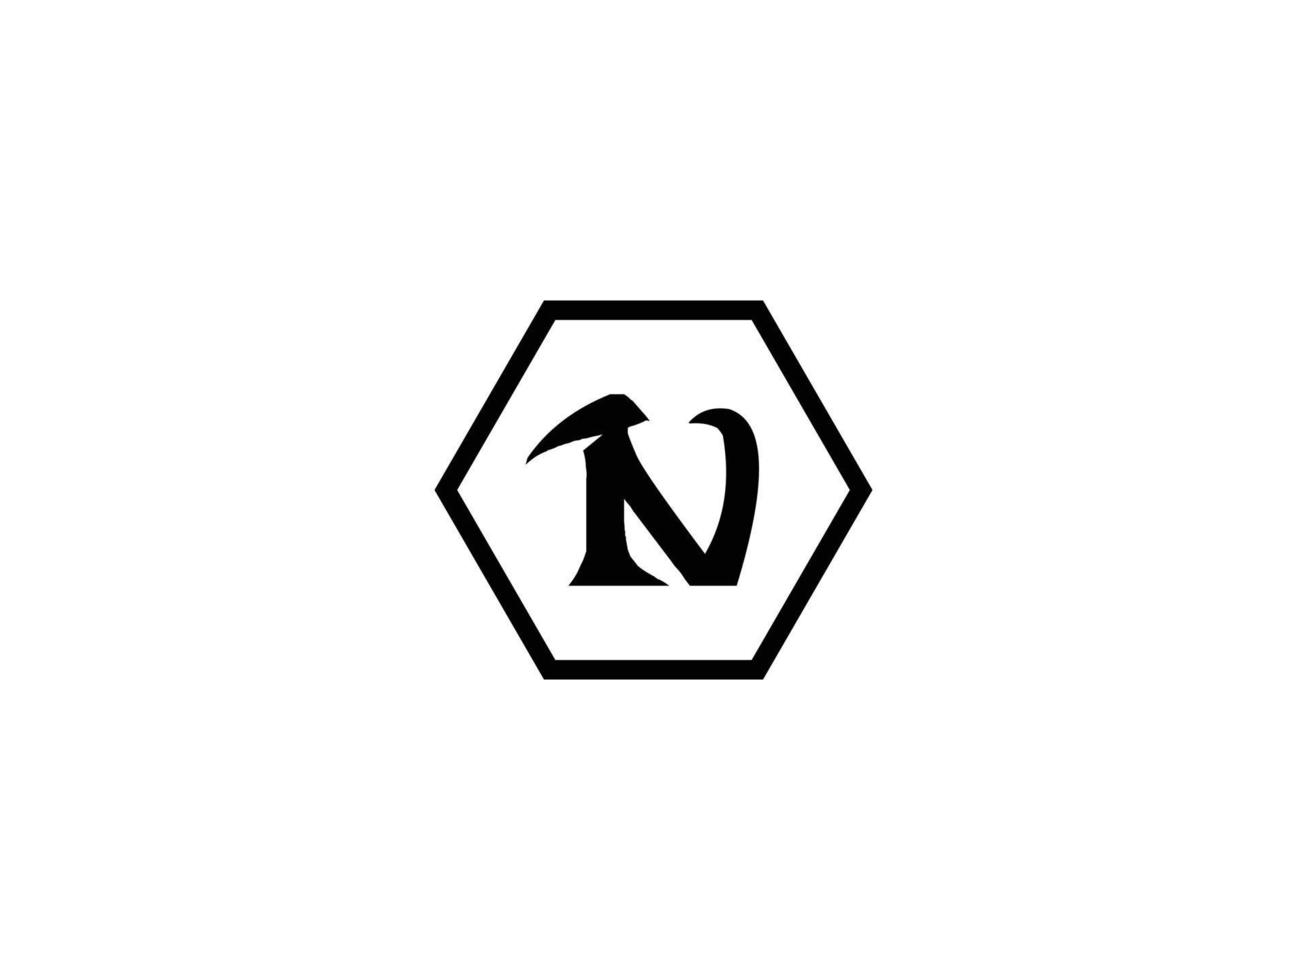 buchstabe n logo design vektor